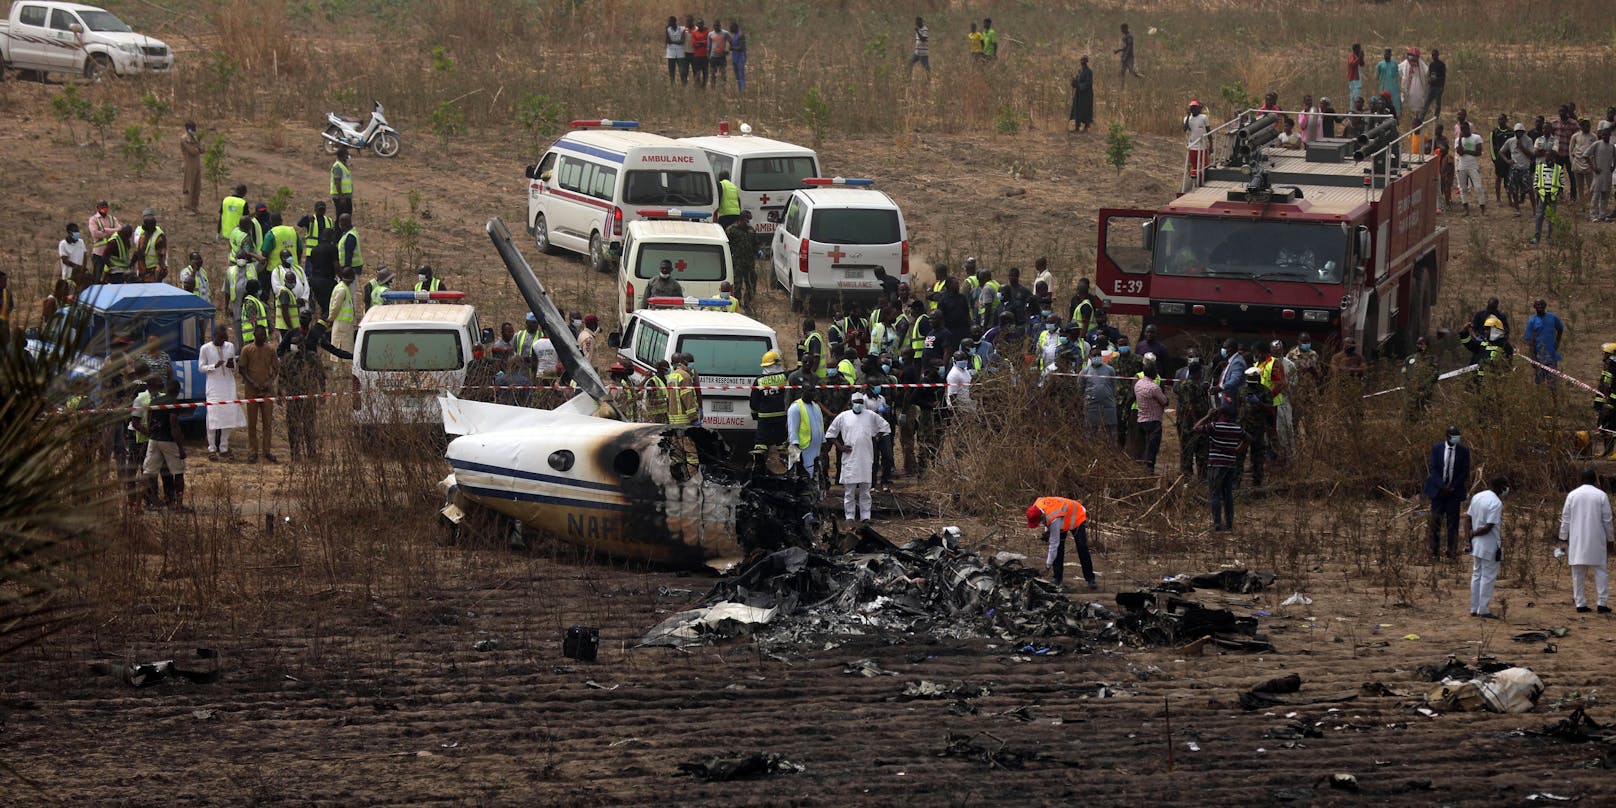 Rettungskräfte im Einsatz bei dem Militärflugzeug-Absturz in Nigeria.&nbsp;